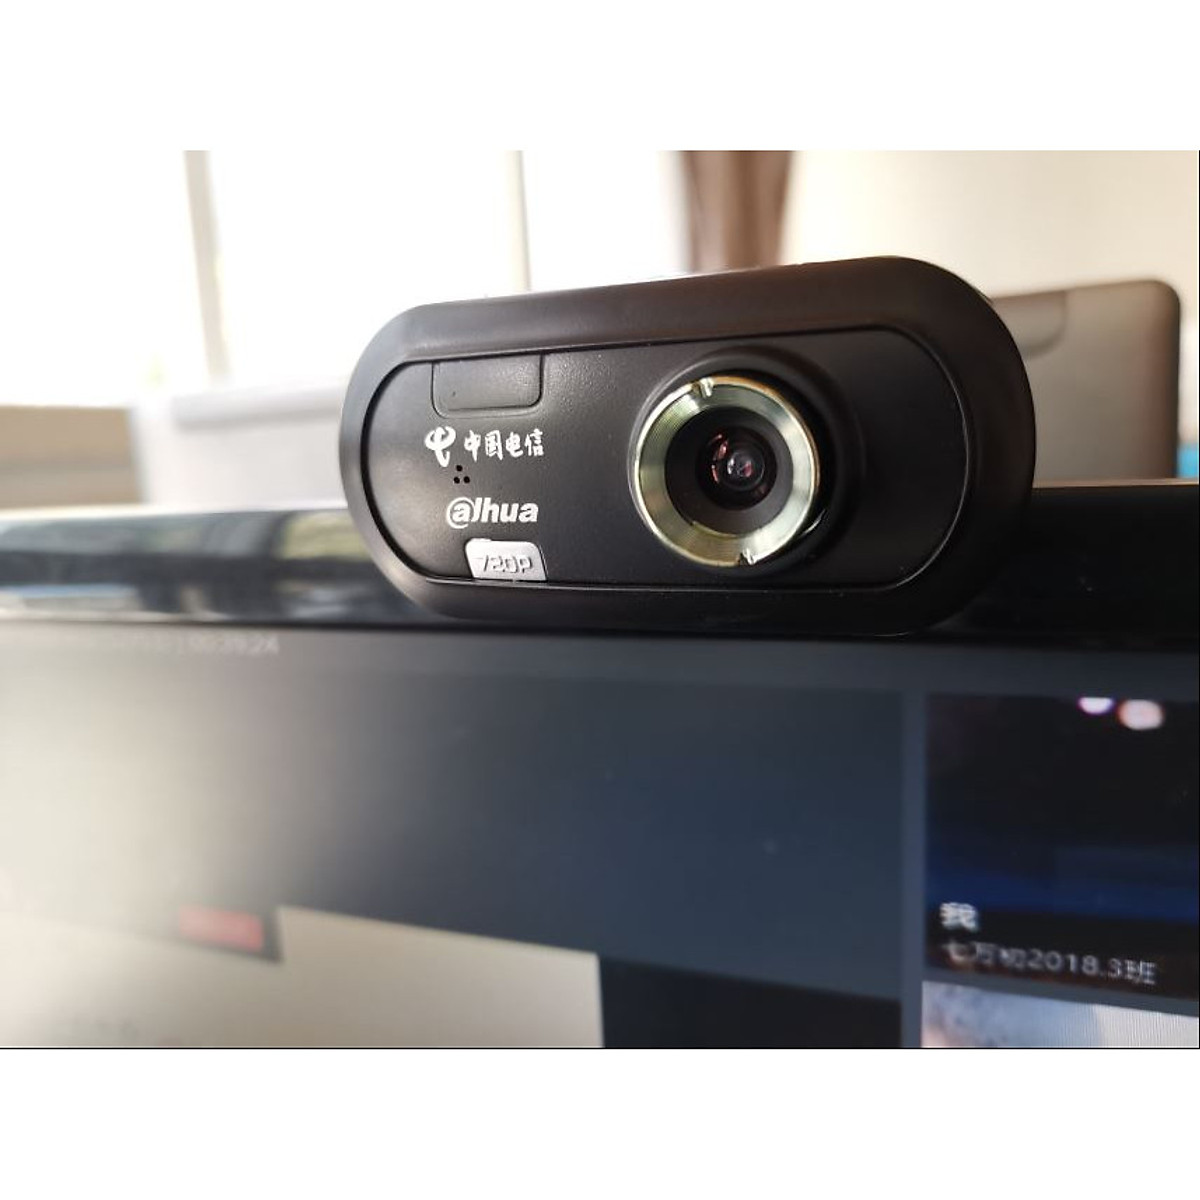 Webcam Dahua Z2 Wc Hd 720p Tích Hợp Micro Hỗ Trợ Học Online Hội Họp Trực Tuyến Phù Hợp Window Dễ Cài Đặt - Hàng Nhập Khẩu